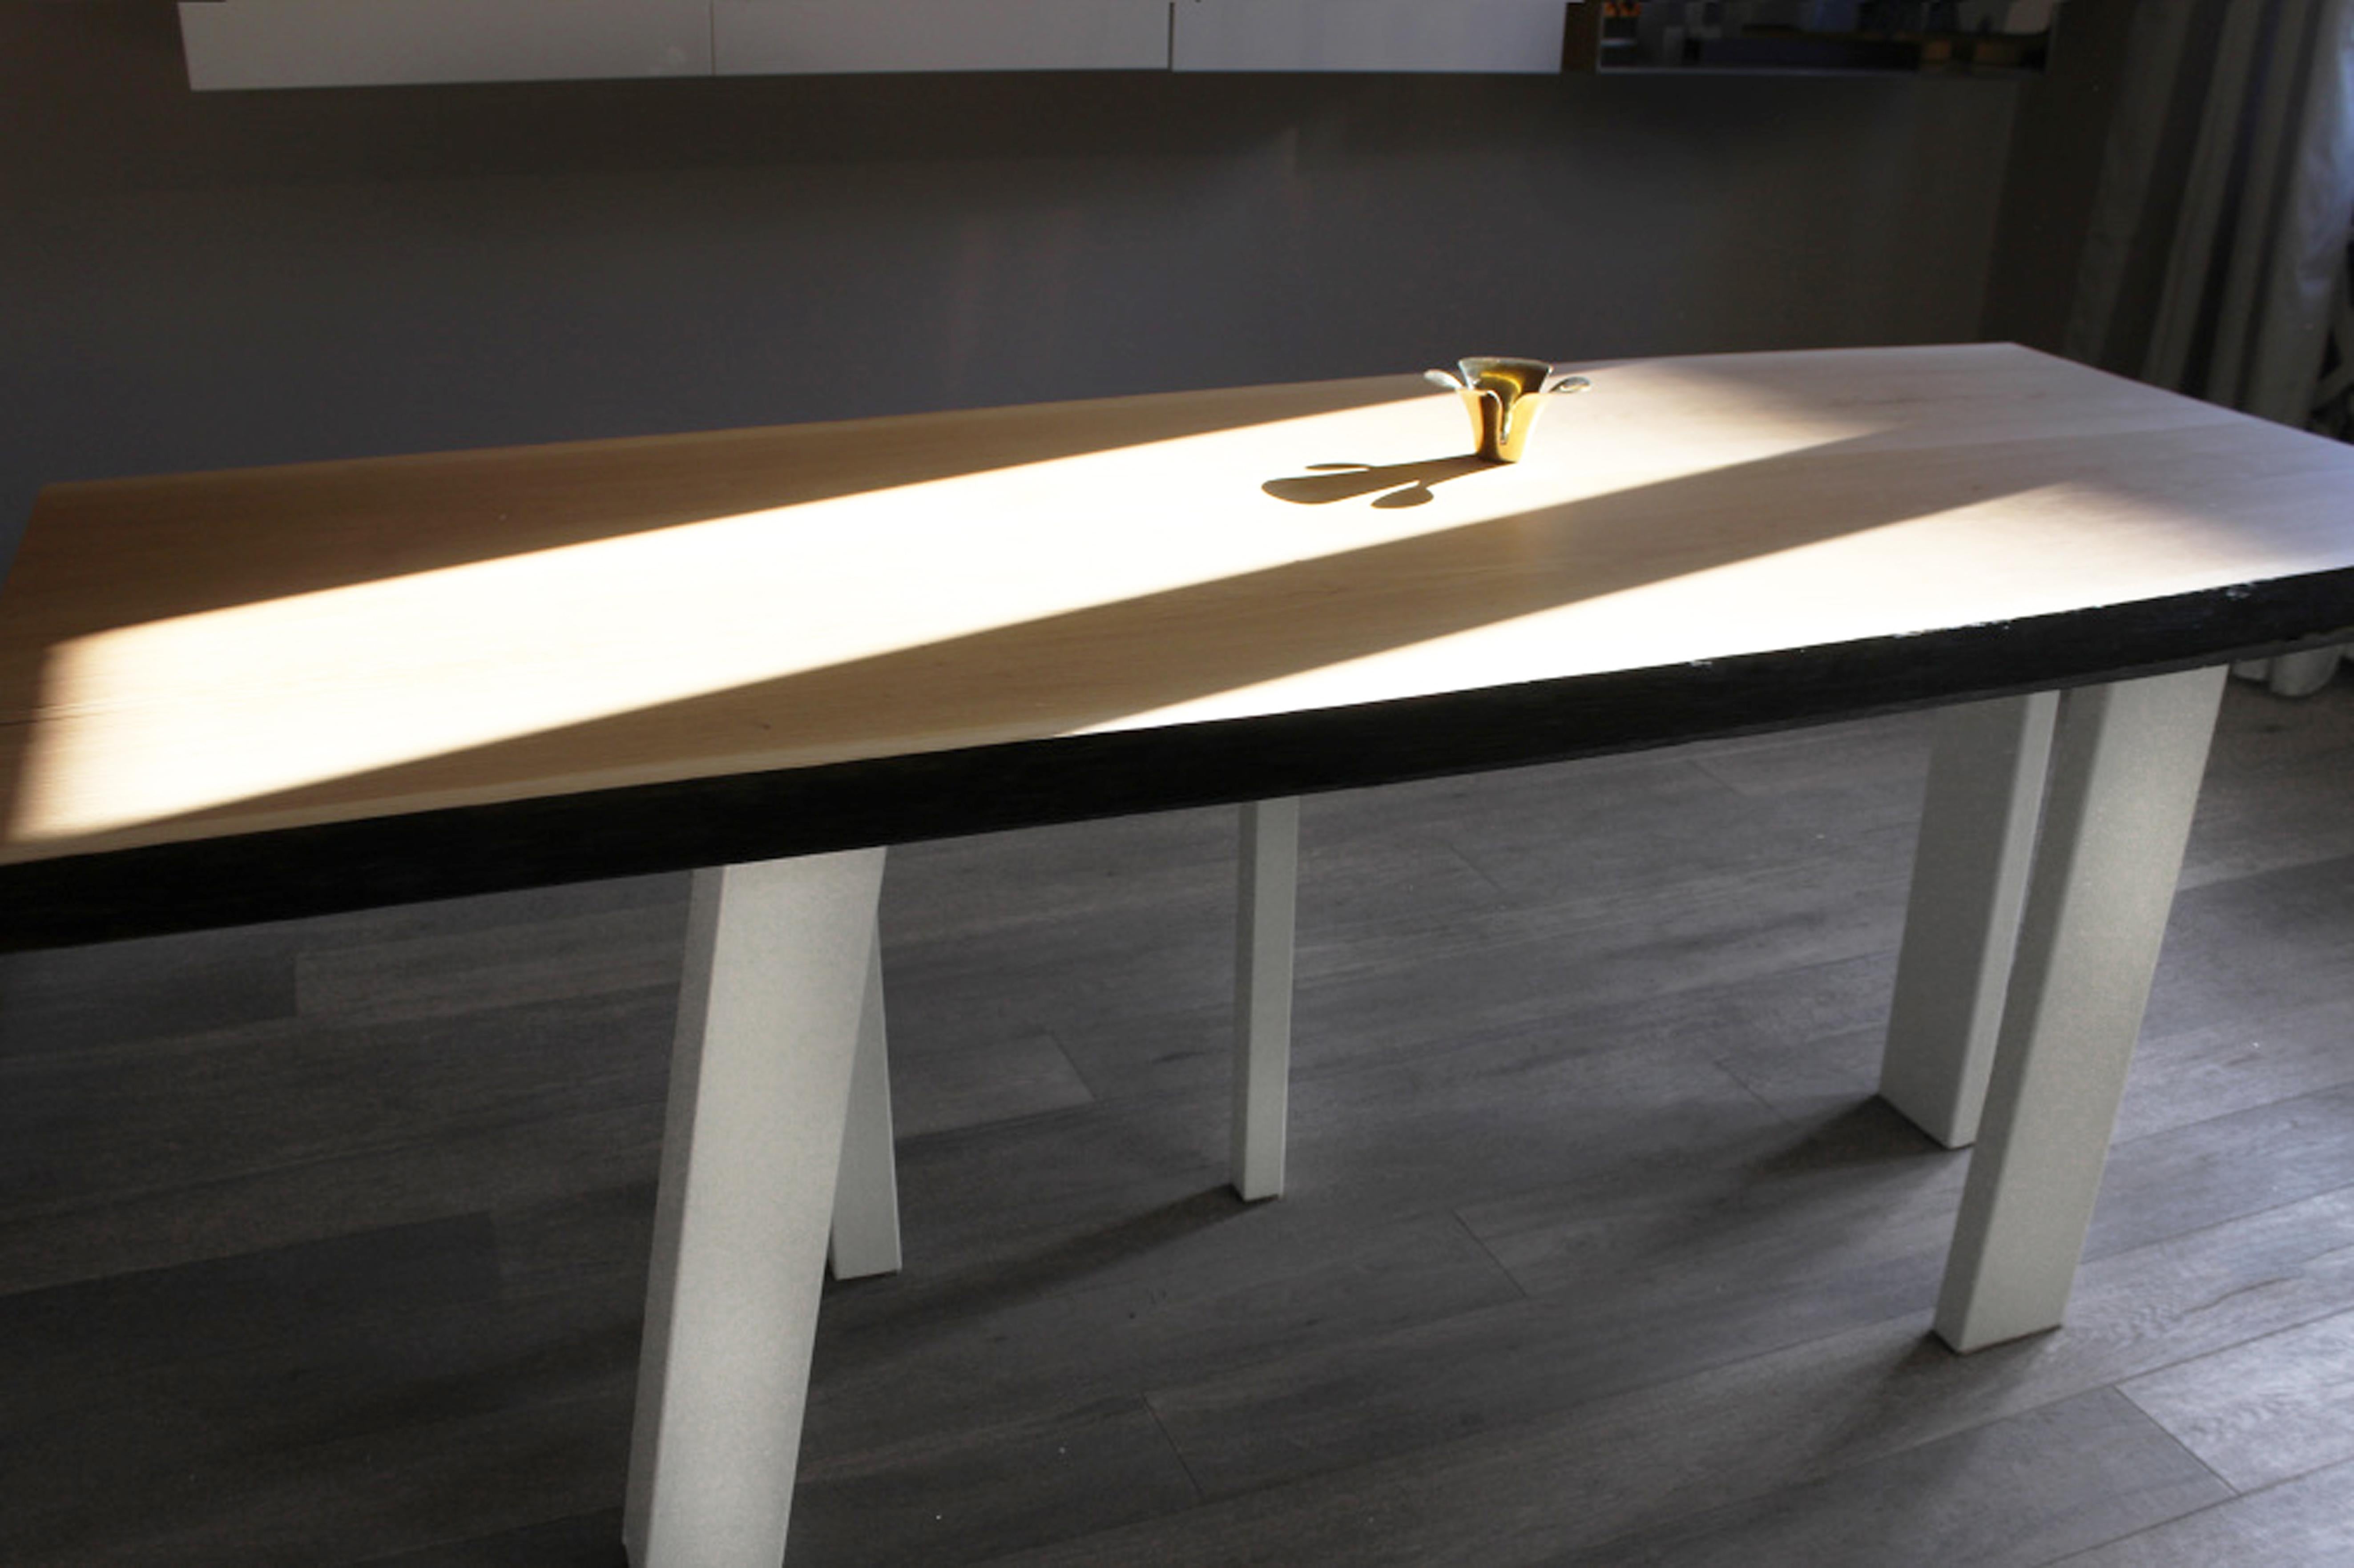 wood ist ein sehr minimalistischer und eleganter Tisch, der in jeder Wohnung, jedem Loft, Büro, jeder Bar und jedem Restaurant aufgestellt werden kann. Die Basis ist aus recyceltem Eisen mit hellen Farben lackiert und auf einer Schwarte oder